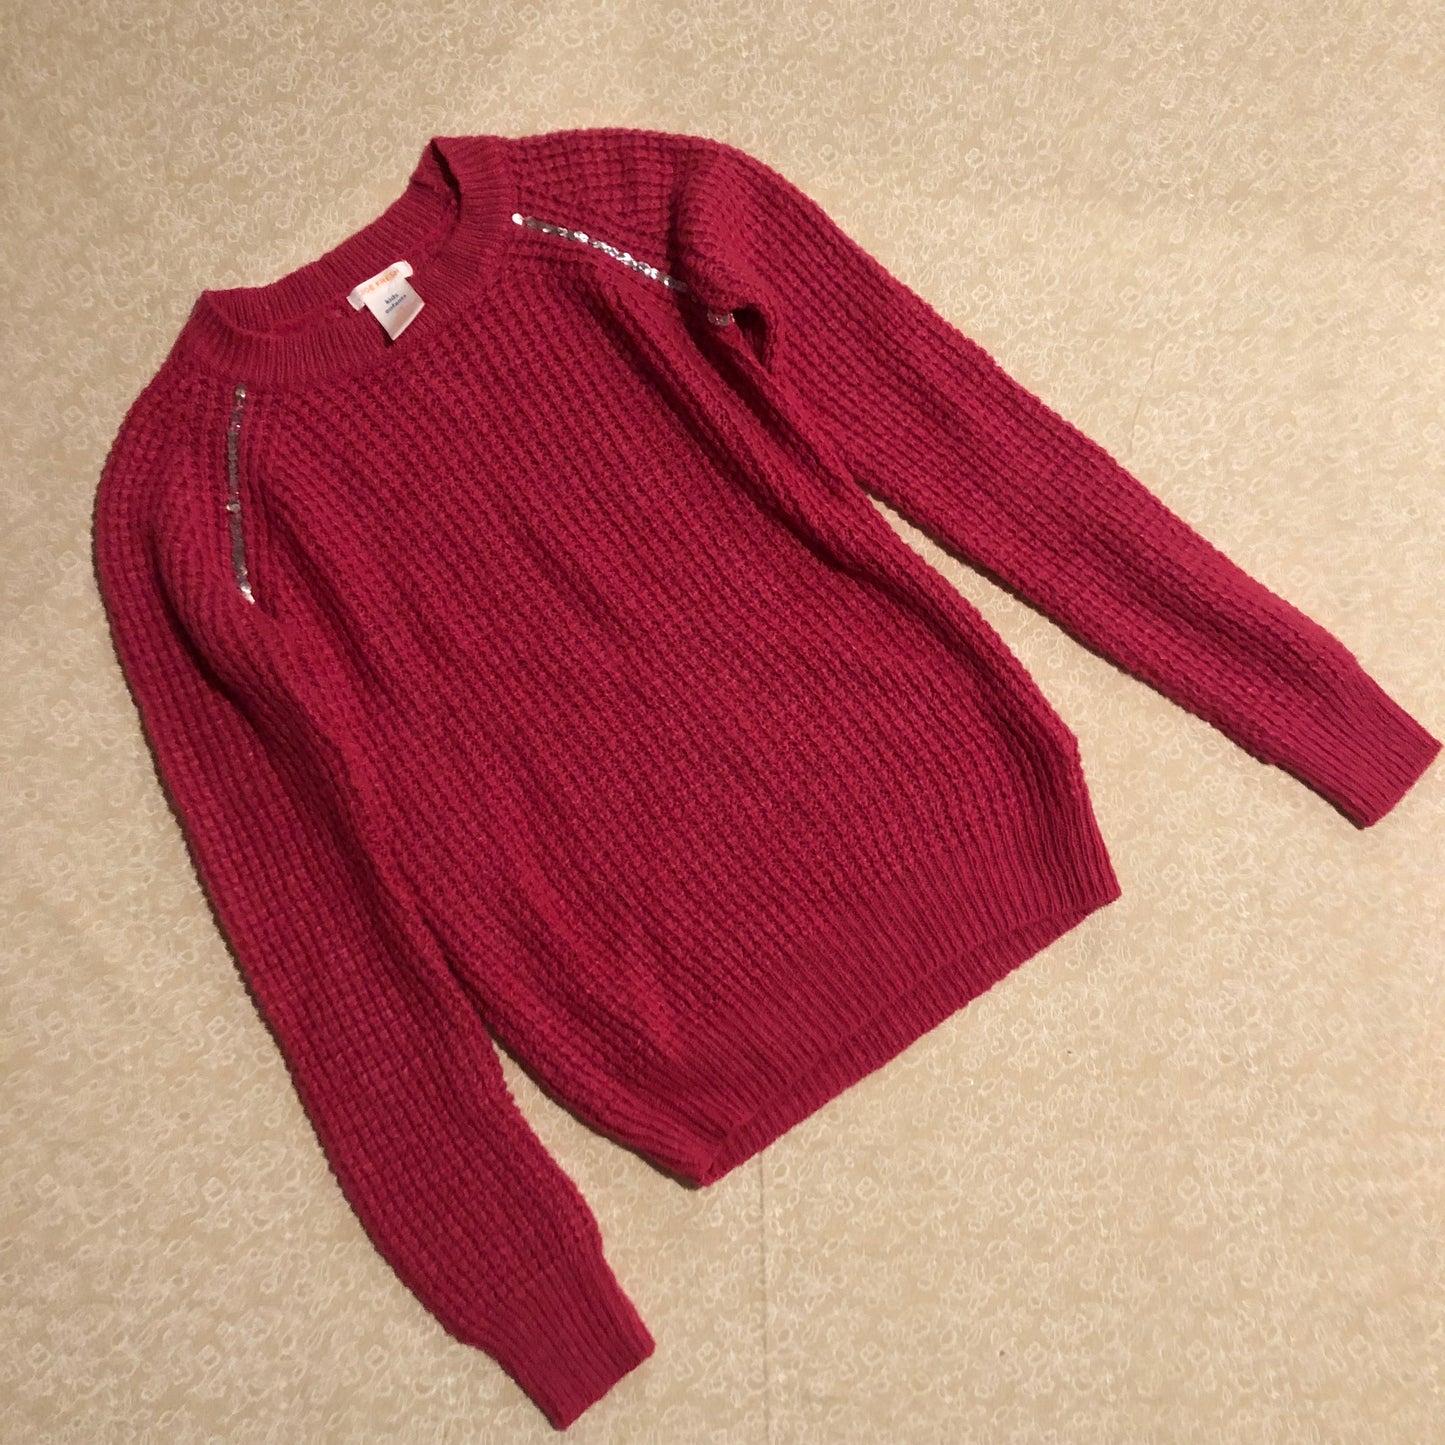 10-12-sweater-joefresh-pink-knit